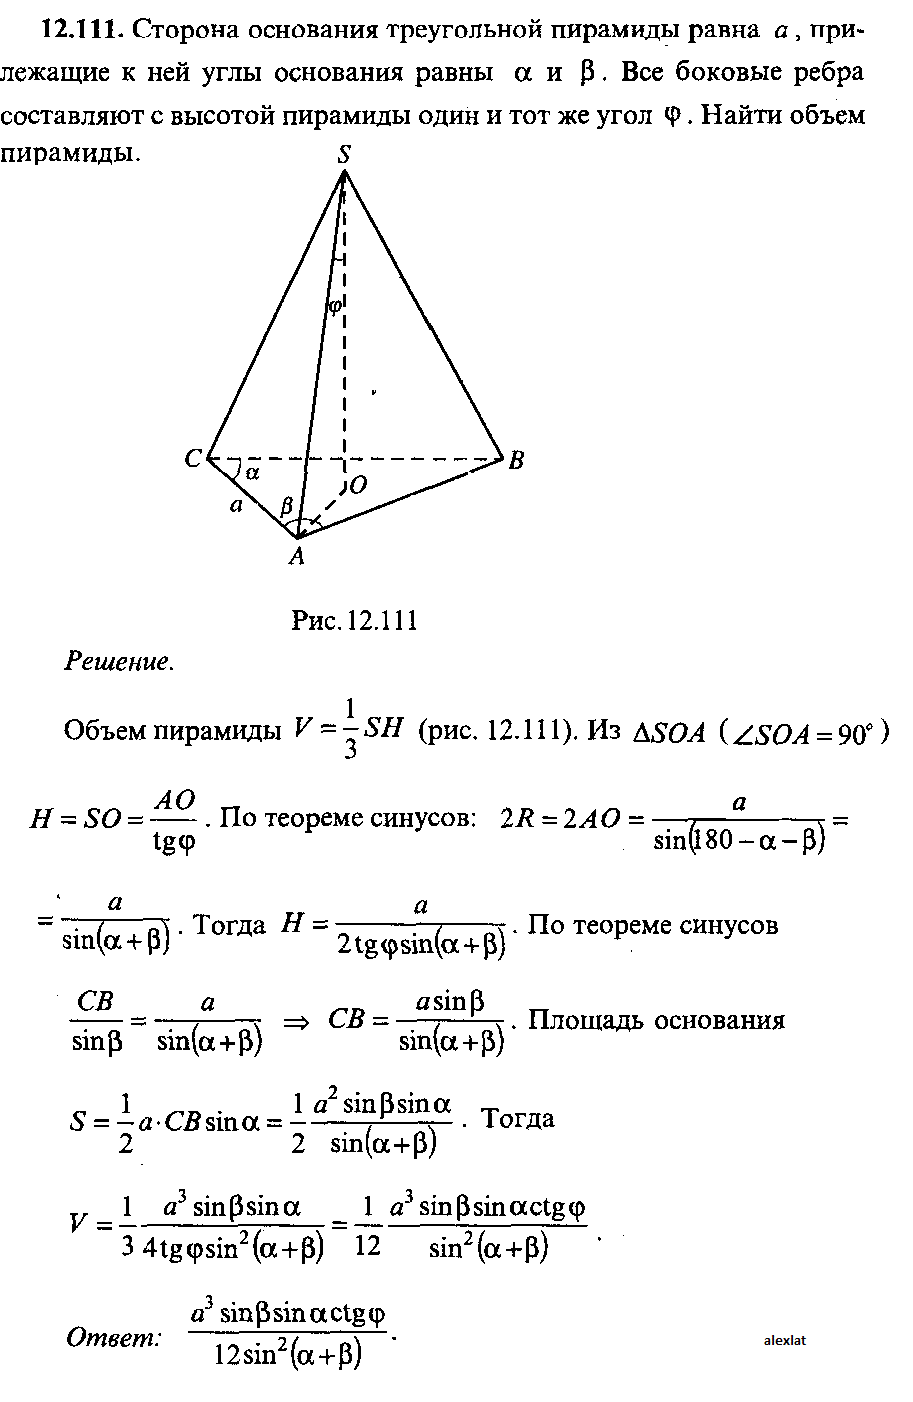 Объём треугольной пирамиды? Боковая сторона 12 и угол 60. Сторона основания правильной треугольной пирамиды. Сторона основания треугольной пирамиды. Площадь основания правильной треугольной пирамиды.